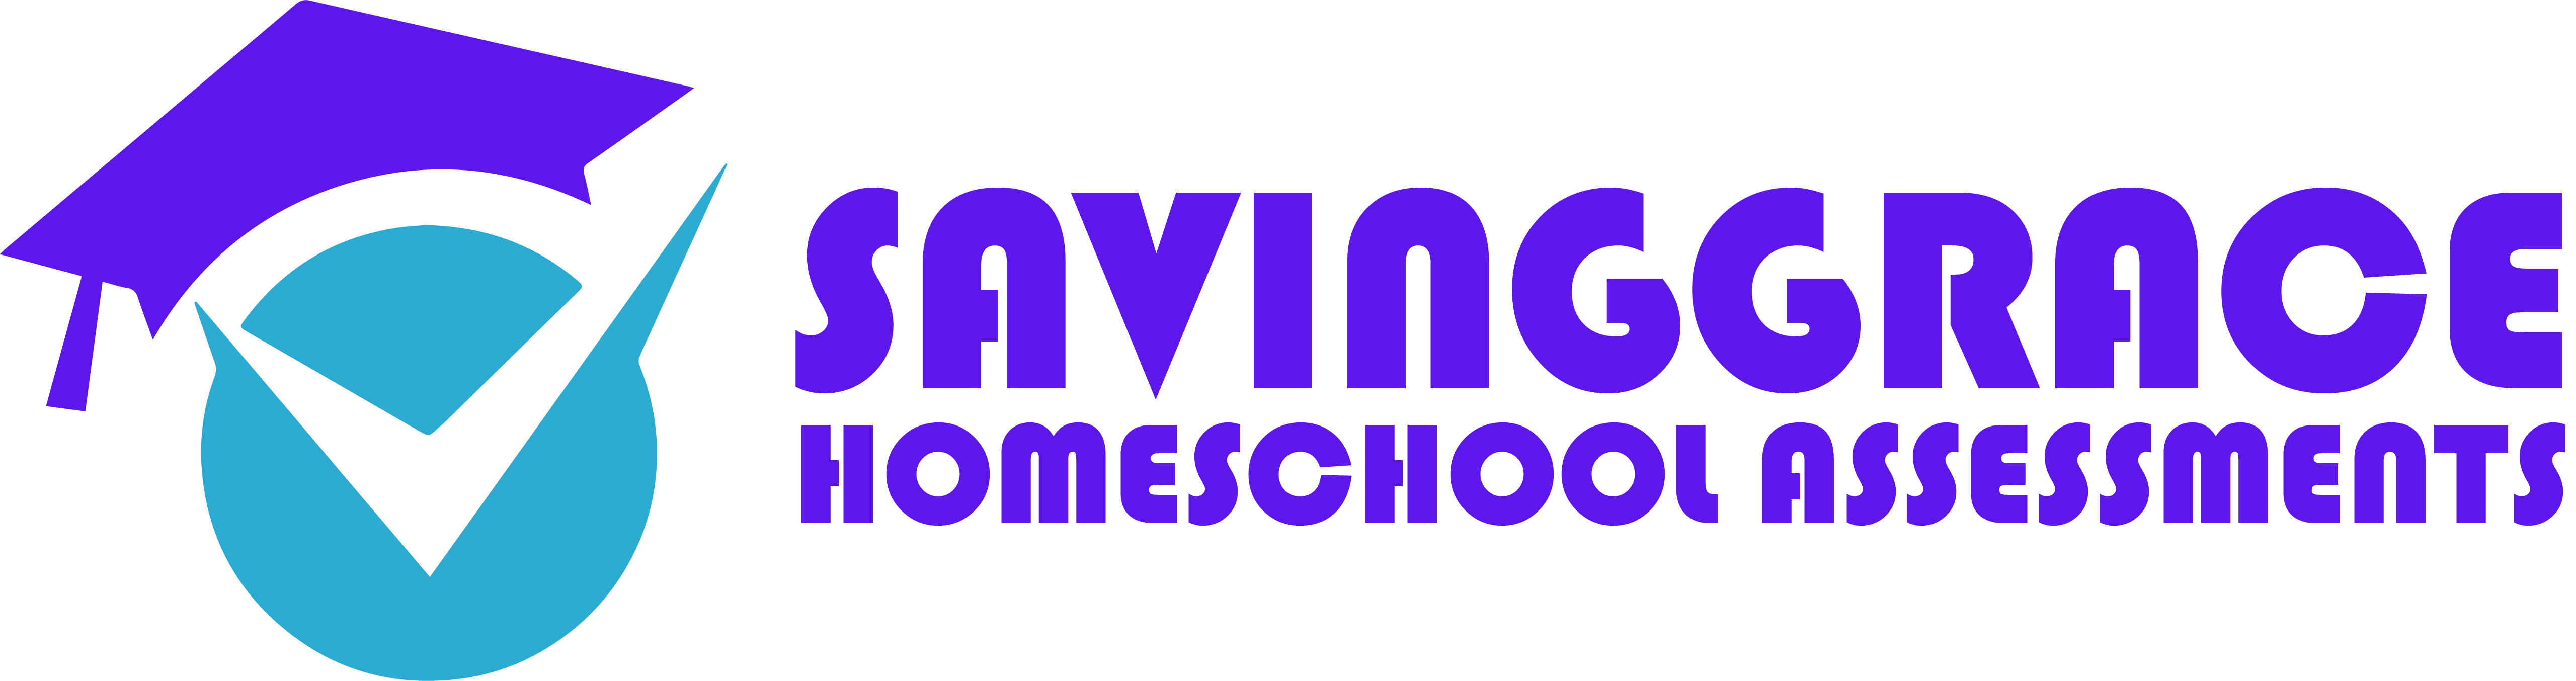 Saving Grace Homeschool Assessments